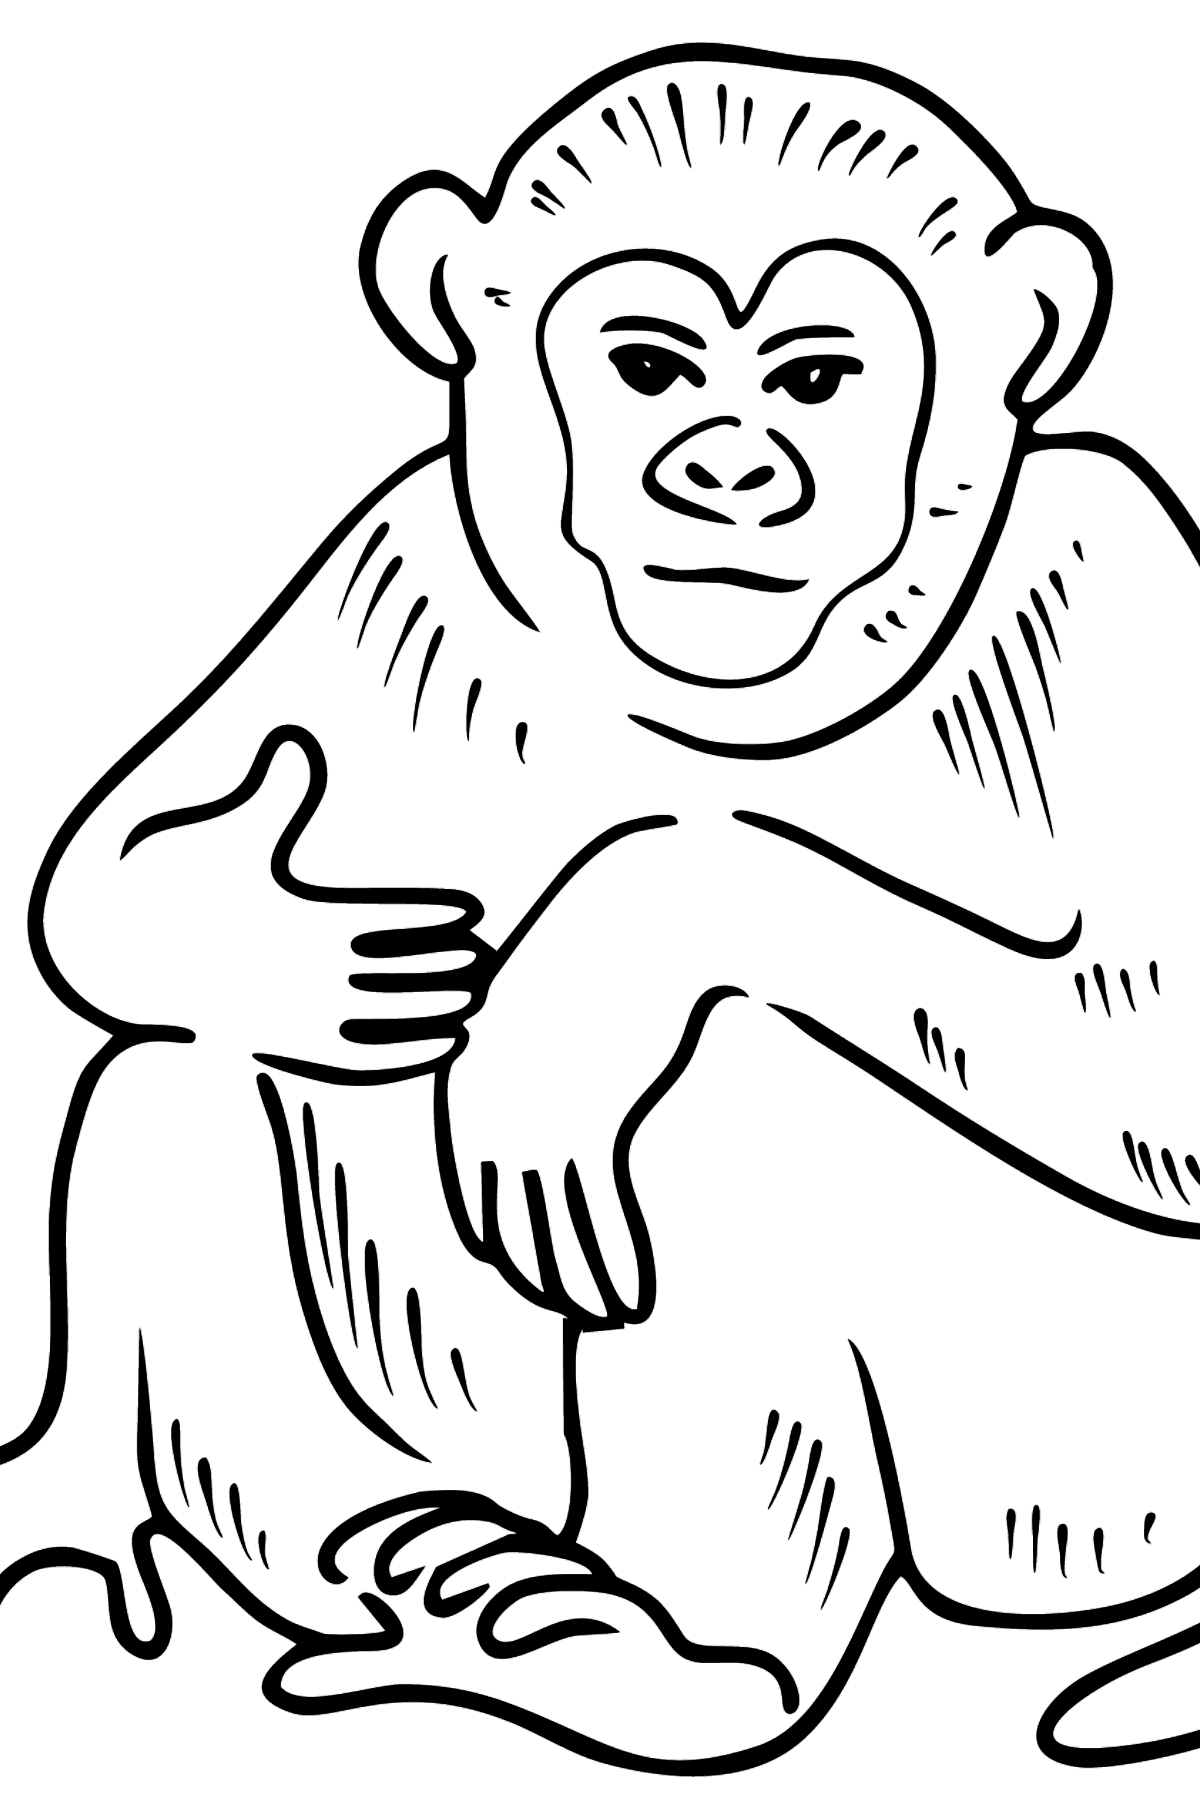 Раскраска обезьяна - Картинки для Детей